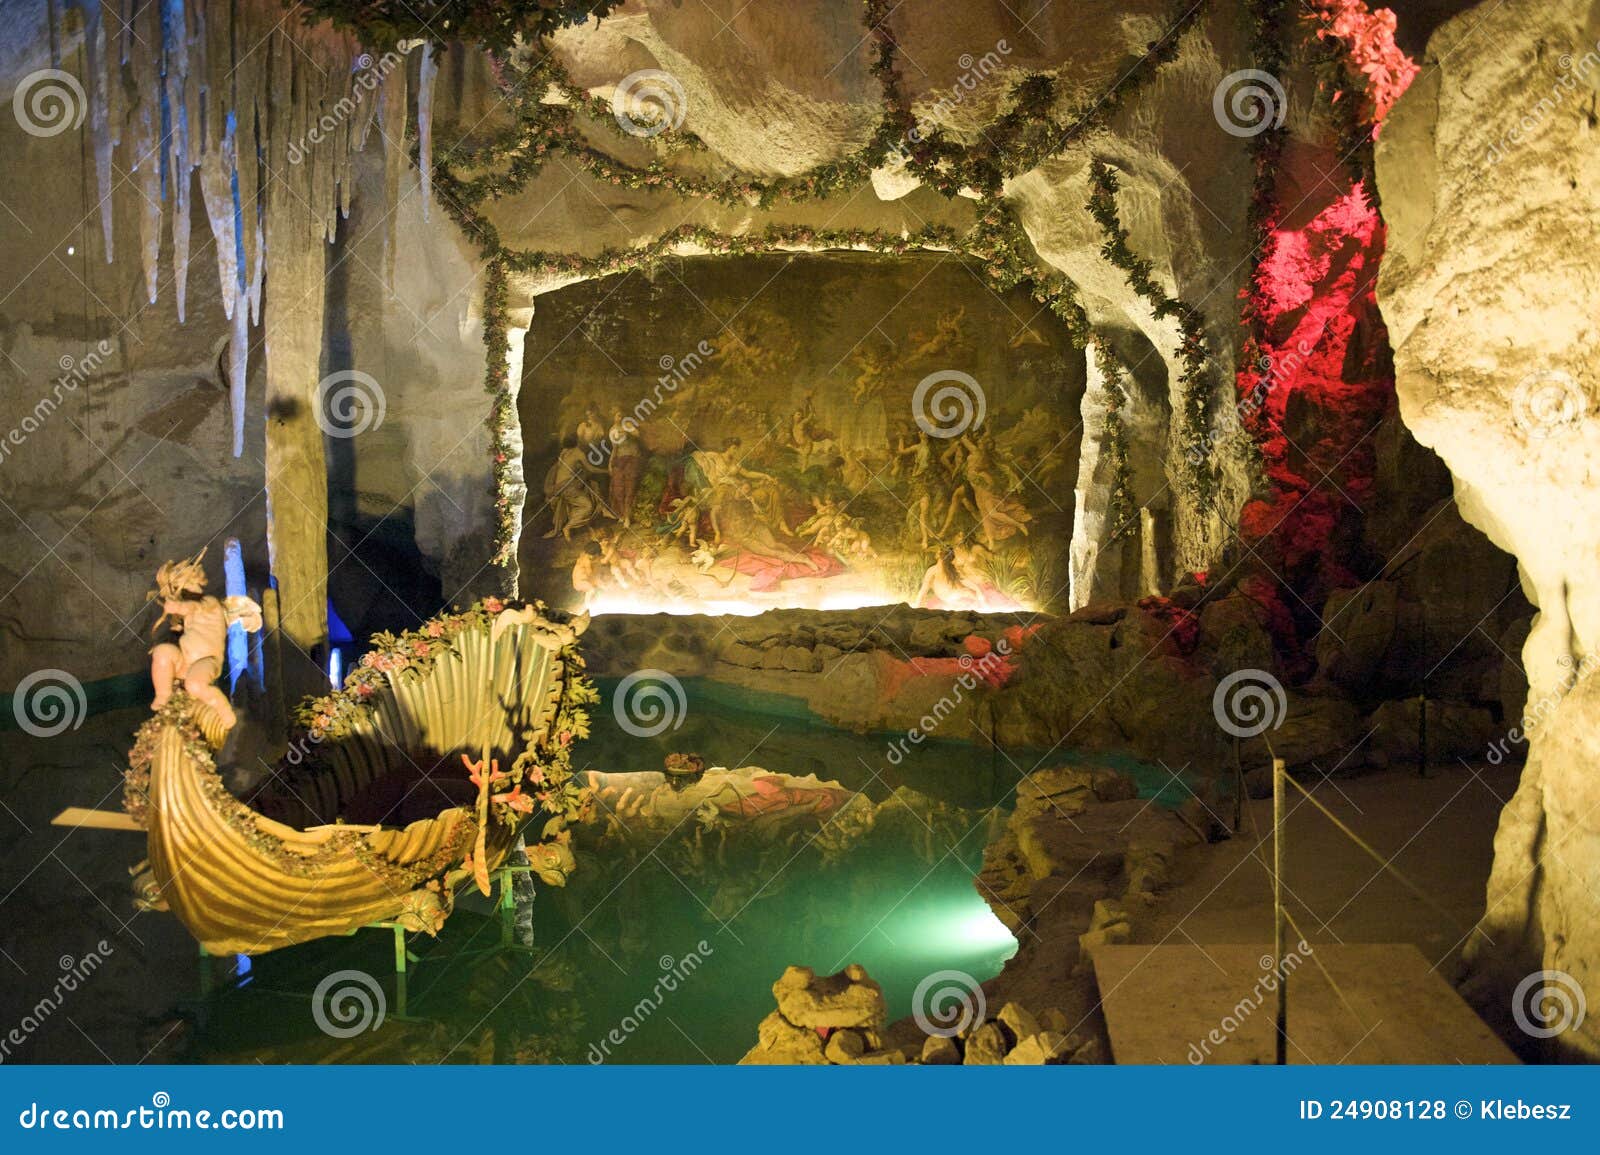 grotto of venus in linderhof castle, bavaria